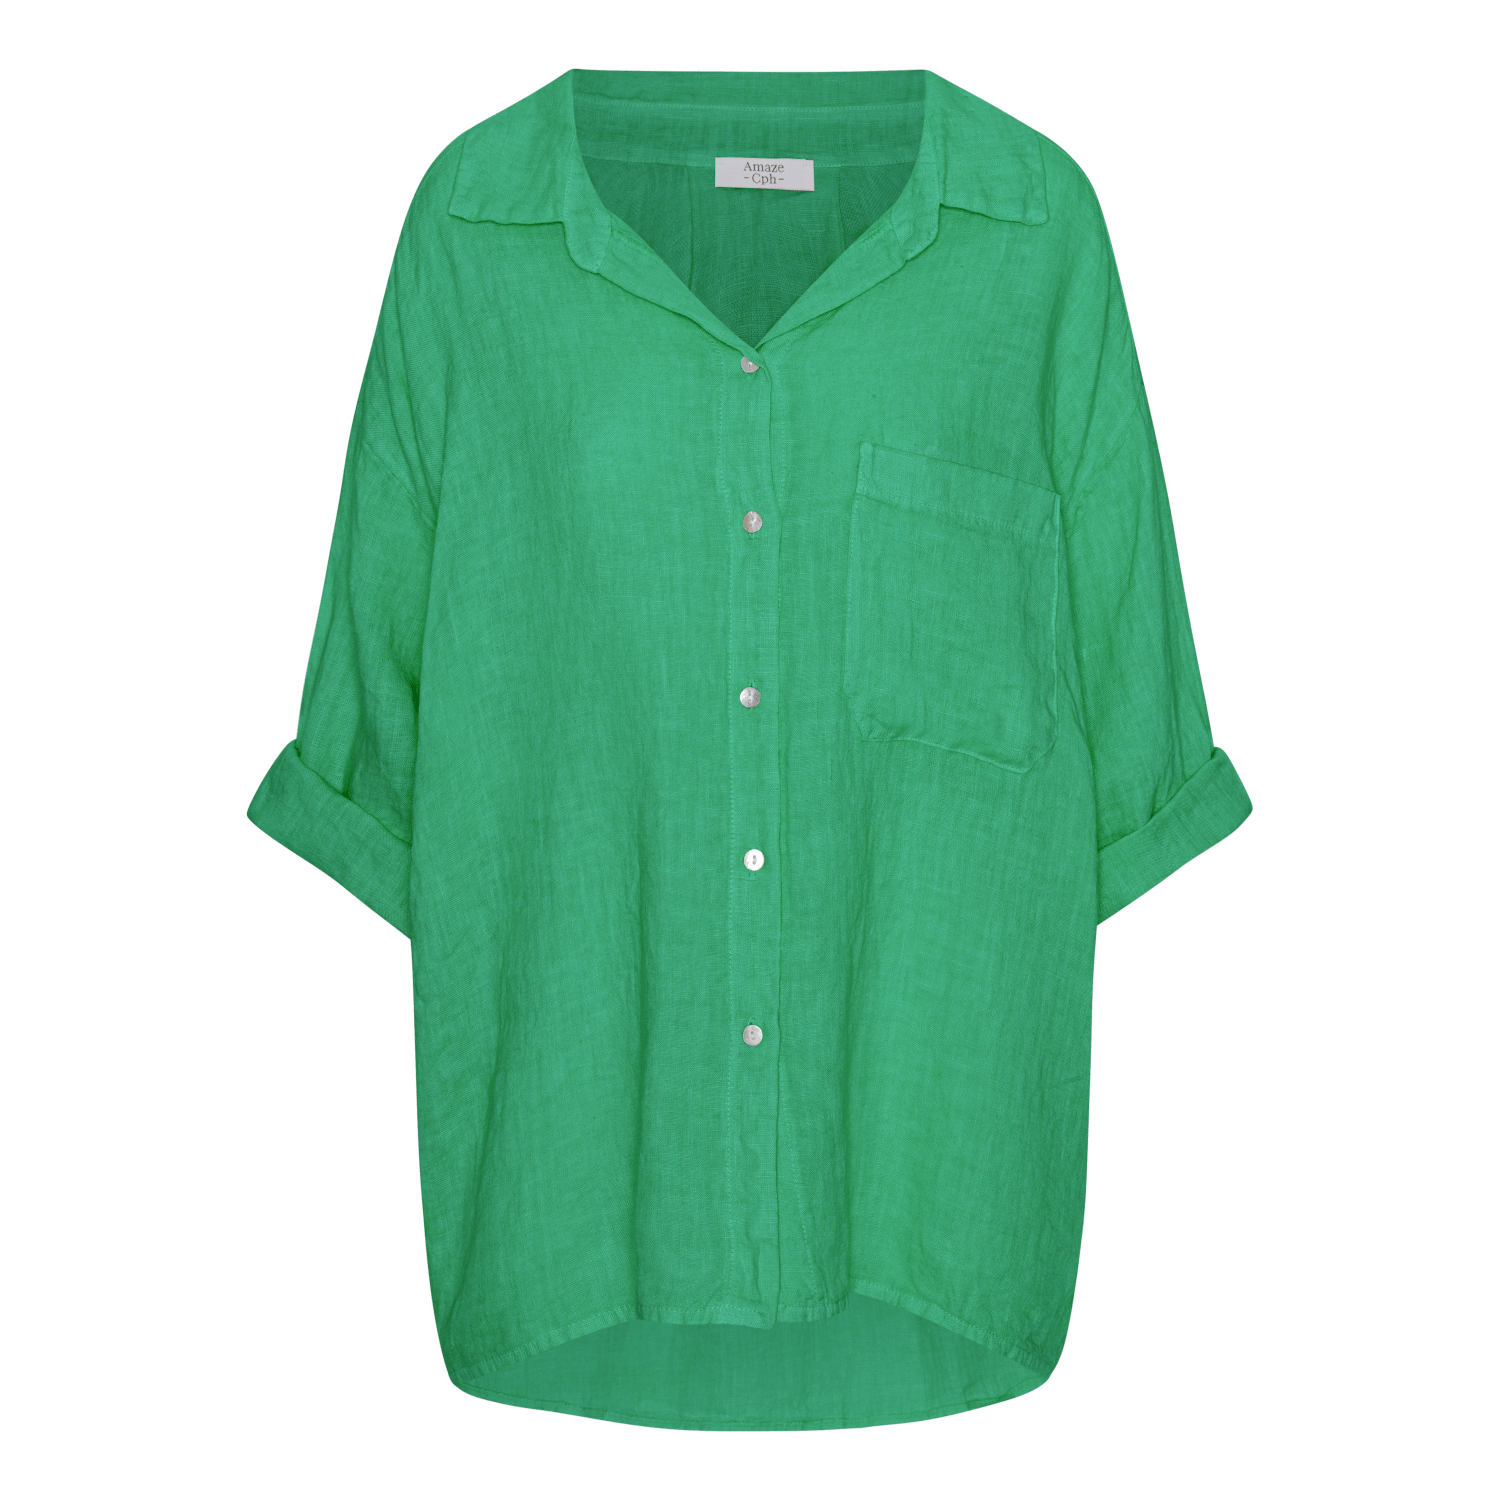 Oversized Linen Shirt - Summer Green - Amaze Cph - Summer Green - S/M